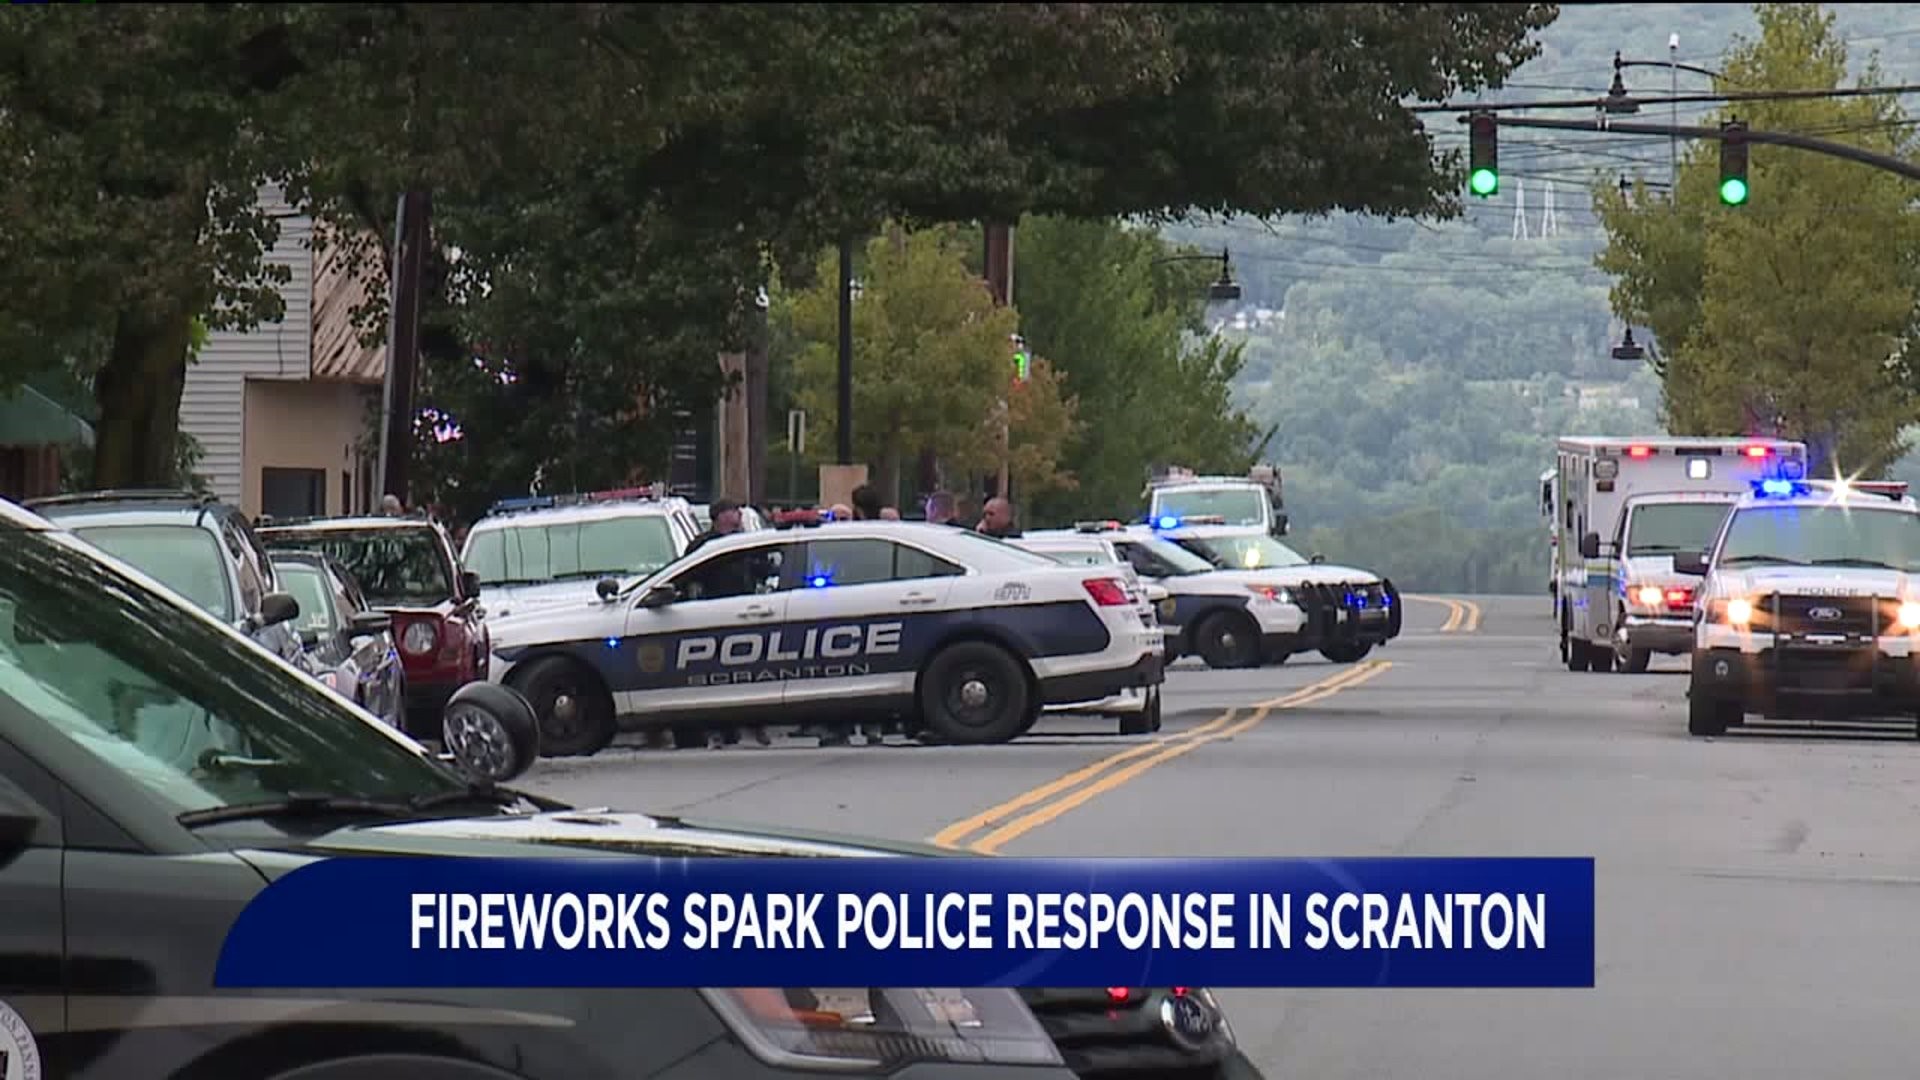 UPDATE: Fireworks Spark Police Response in Scranton